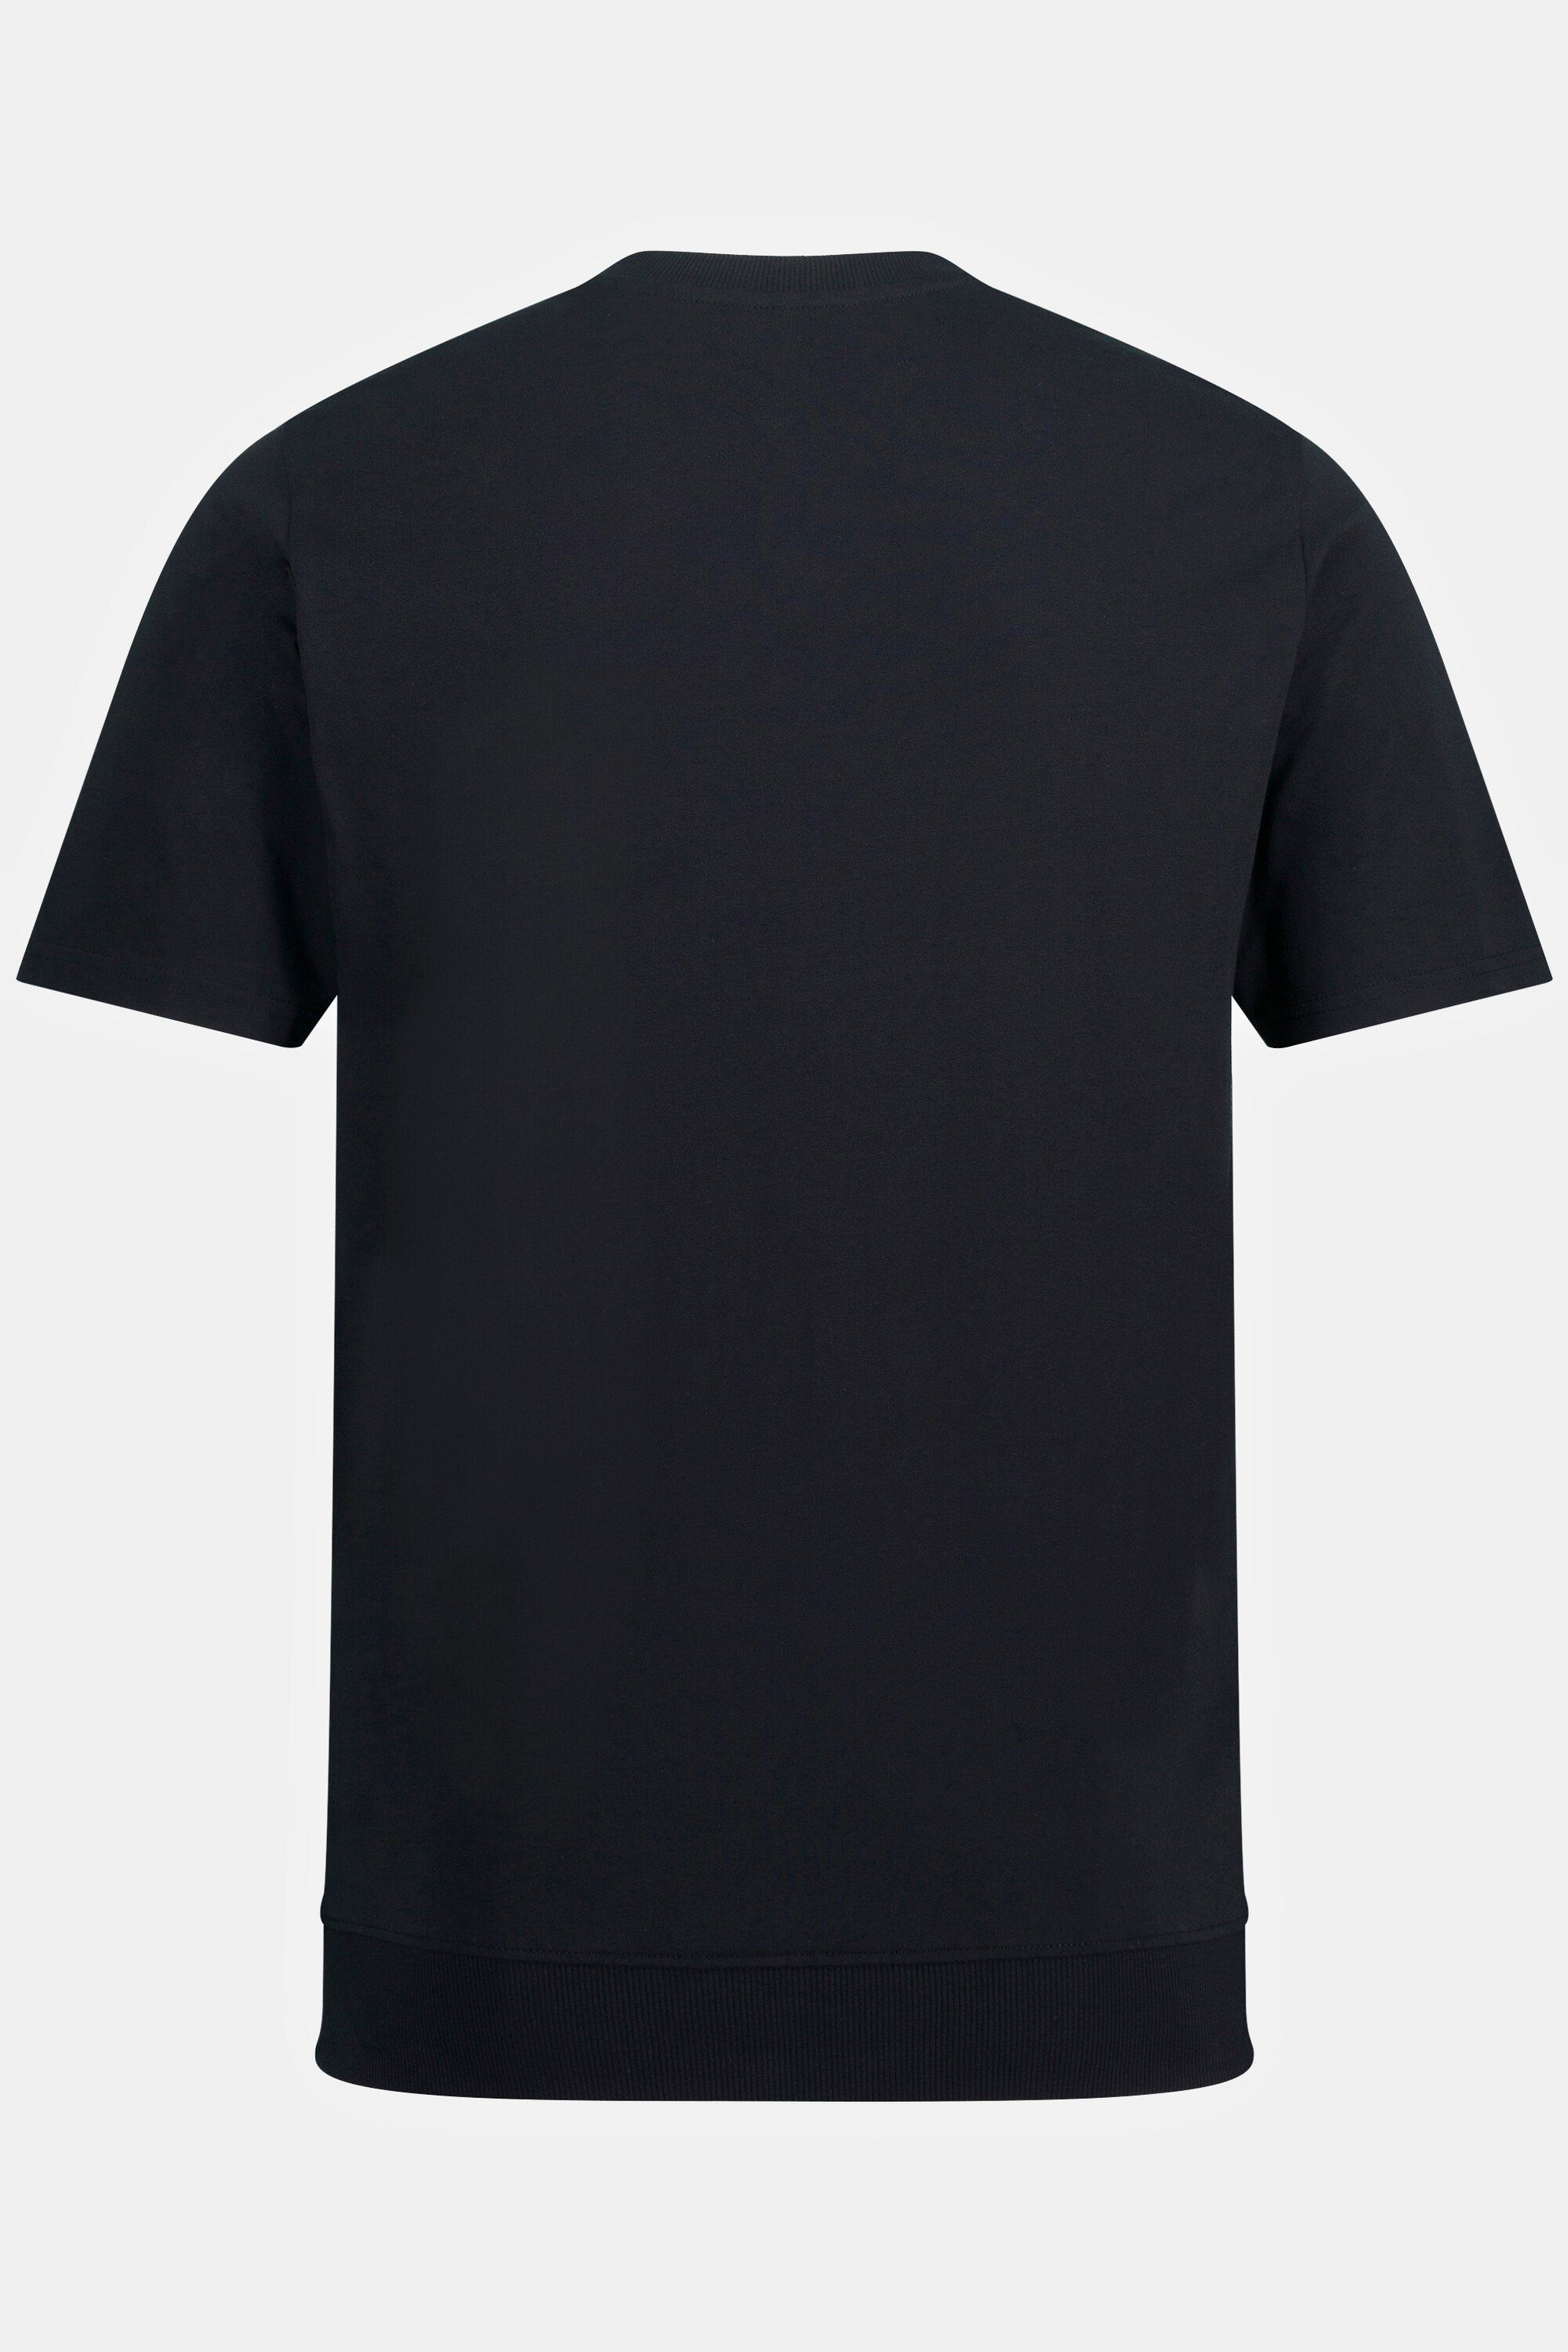 bis Rundhals Halbarm Bauchfit XL 8 schwarz T-Shirt JP1880 Henley